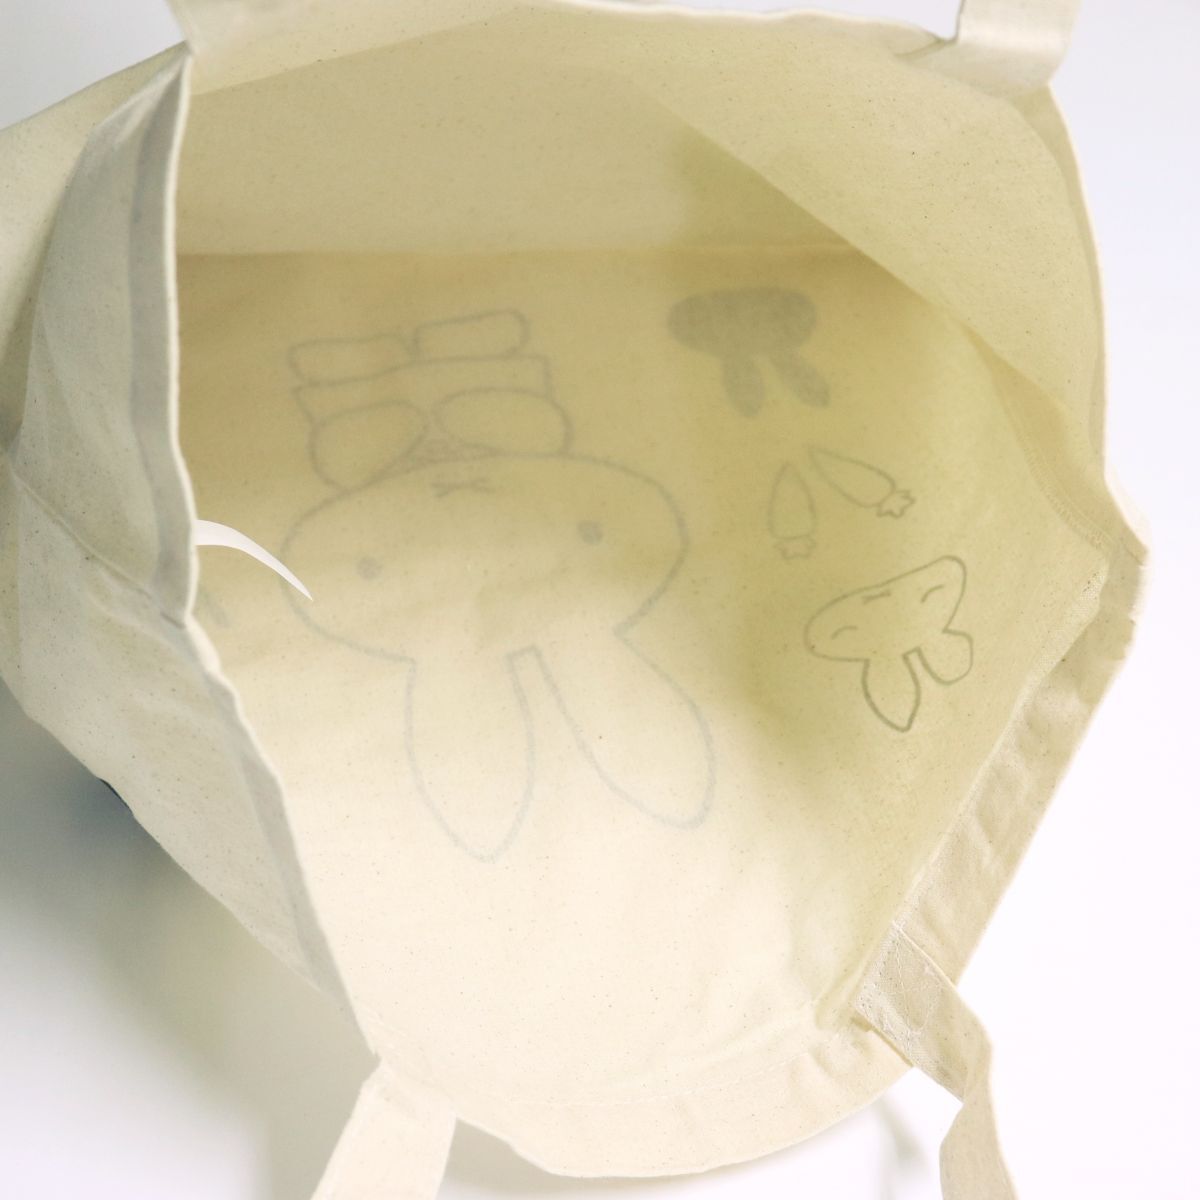 * стоимость доставки 390 иен возможность товар Miffy MIFFY... Chan новый товар брезент парусина большая сумка BAG портфель сумка [MIFFY-BRN1N] один шесть *QWER*